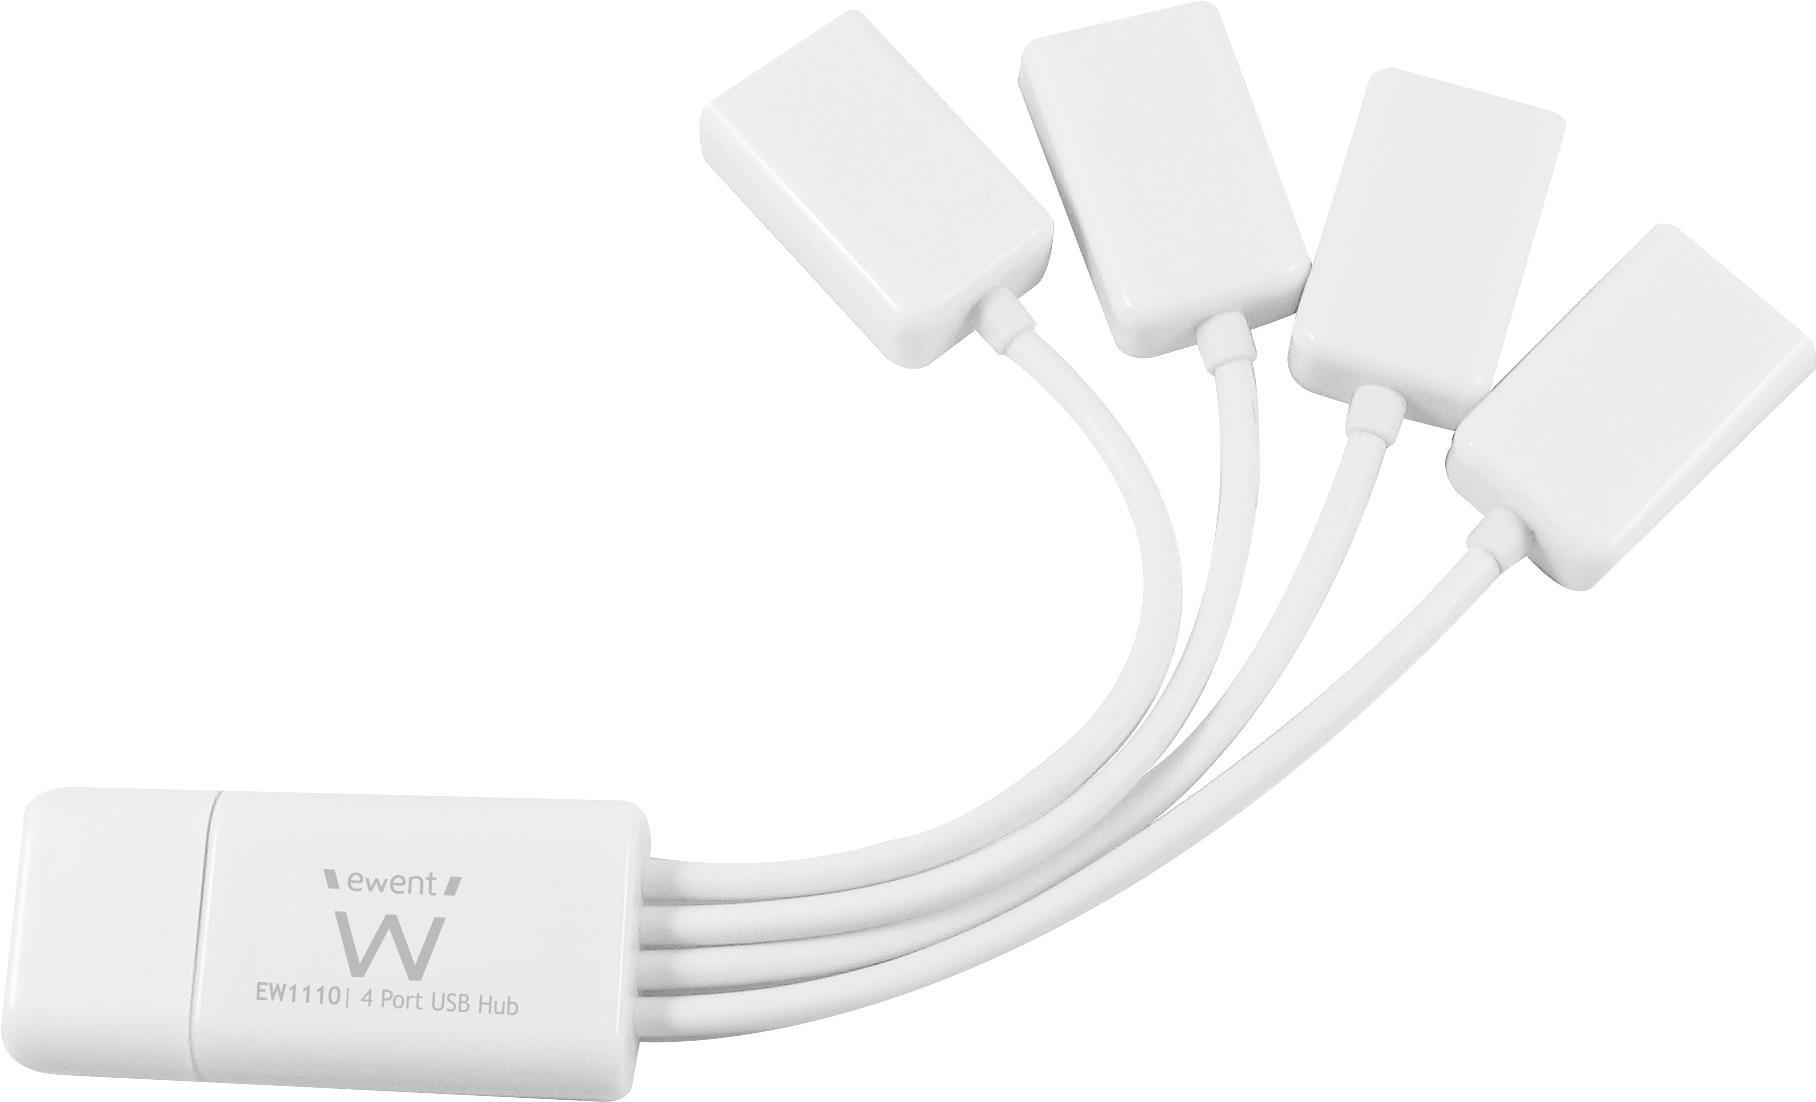 Ewent EW1110 - USB 2.0 - 480 Mbit/s - Weiß - Mac OS X 10.5 Leopard - Mac OS X 10.6 Snow Leopard (EM1110)